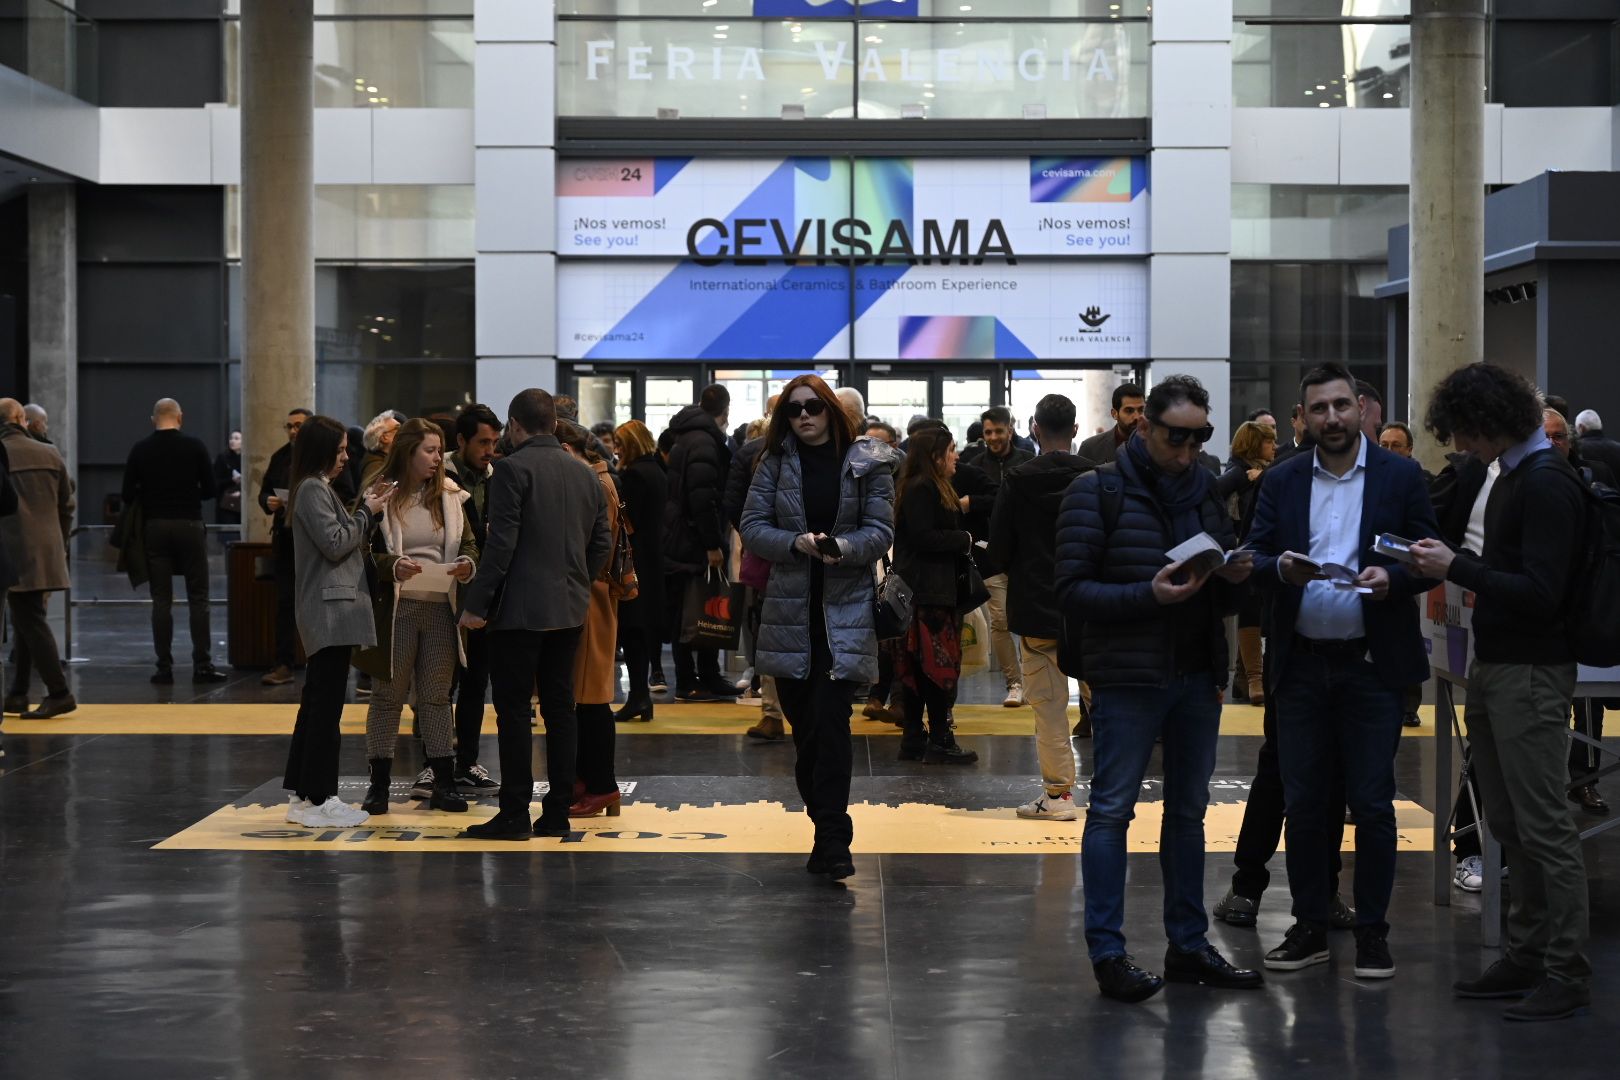 Galería de fotos: Aumenta la afluencia de público en la segunda jornada de Cevisama